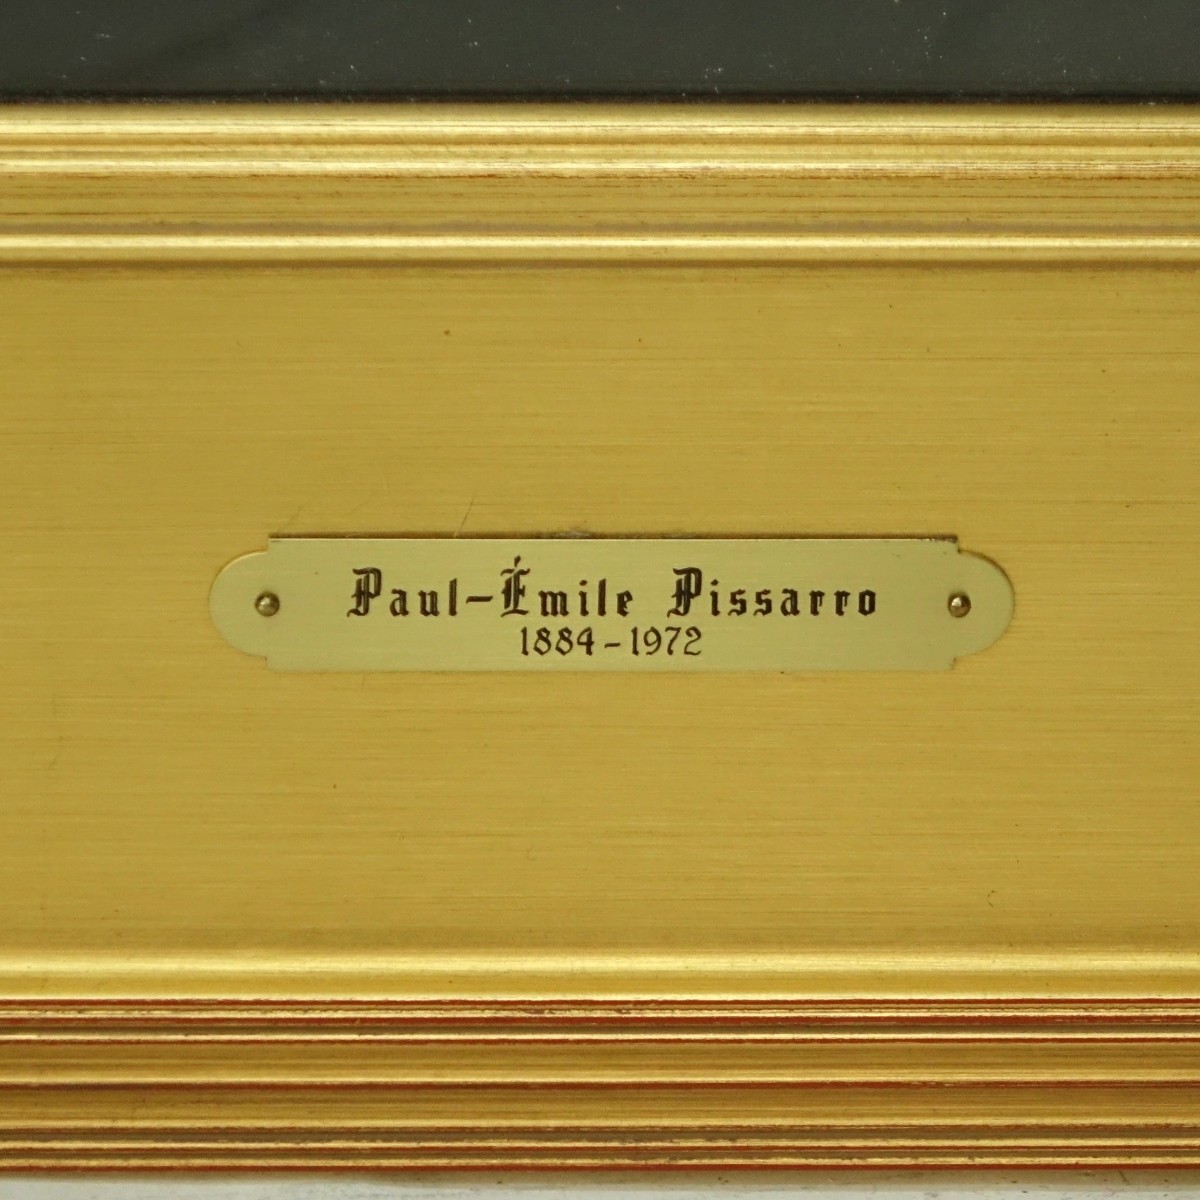 Paul Emile Pissarro (1884 - 1972) Pastel